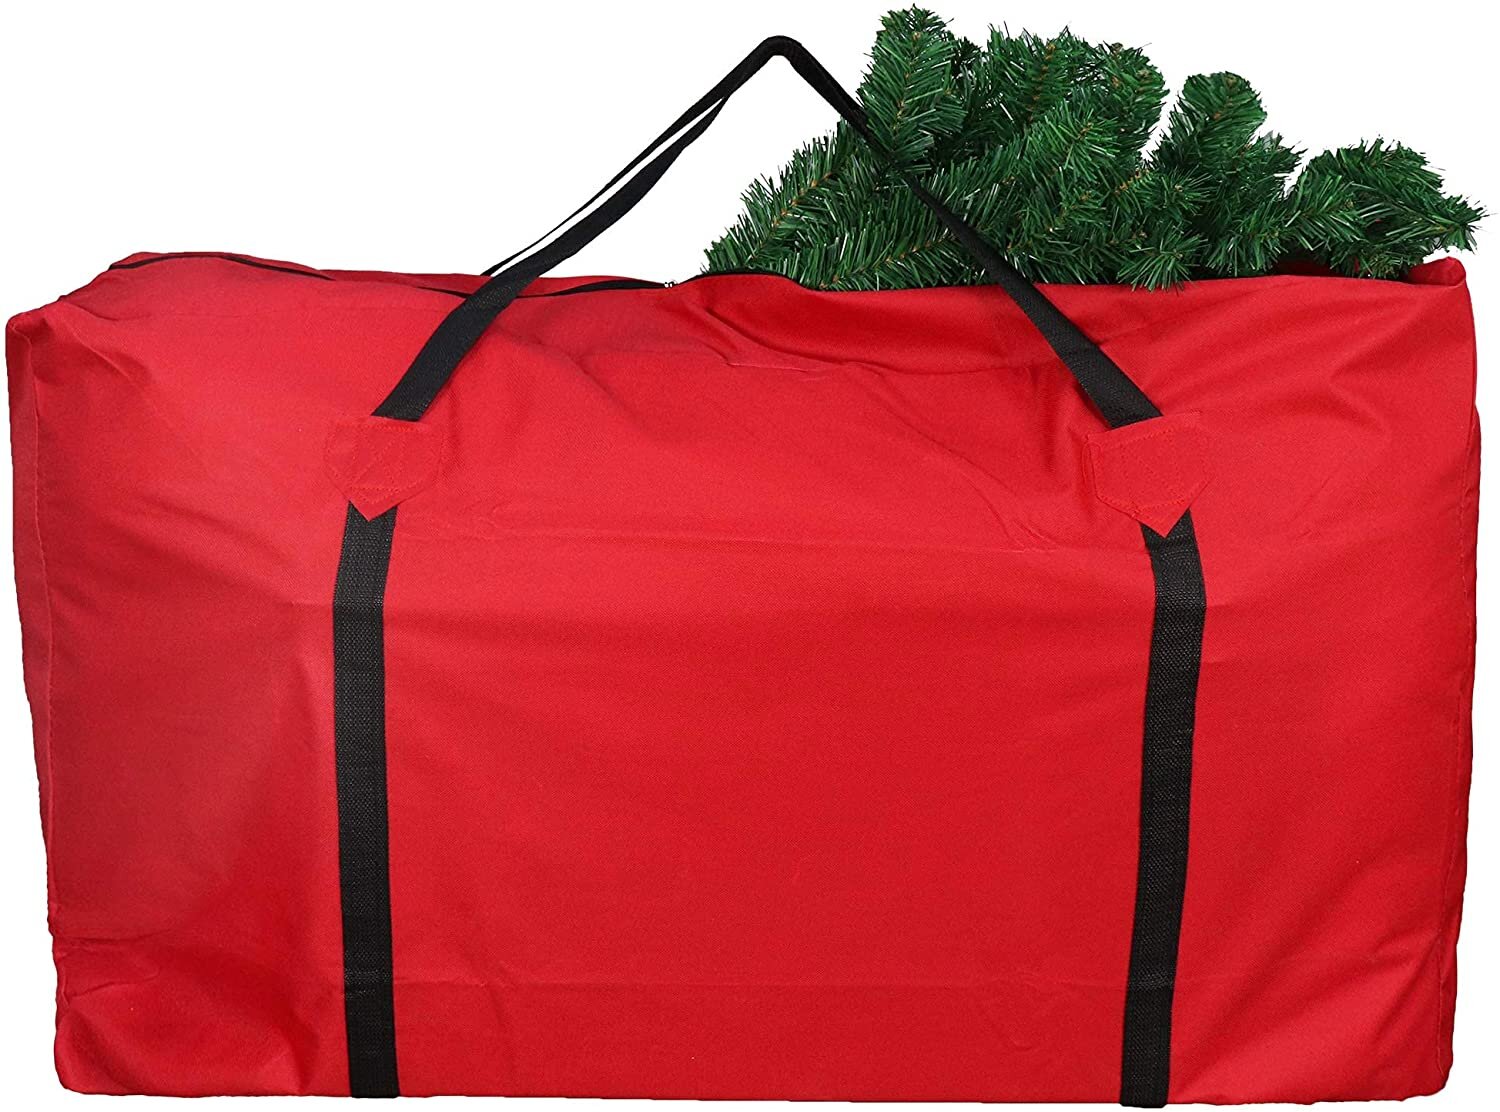 Sac pour le rangement des arbres de Noël, (2) grands sacs - vert